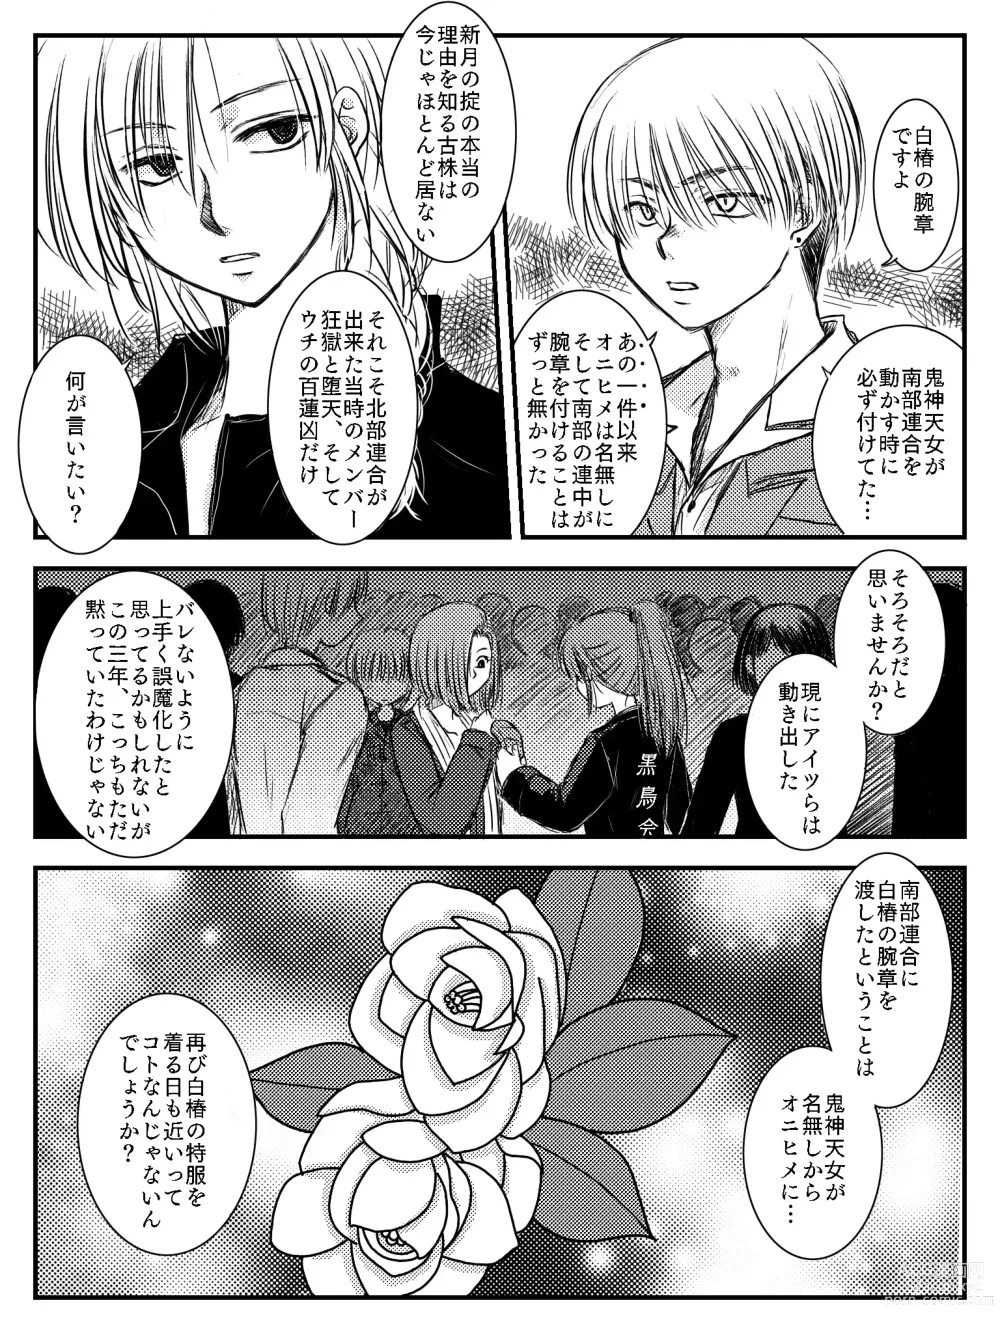 Page 19 of doujinshi LADIES NAVIGATION Episode 4